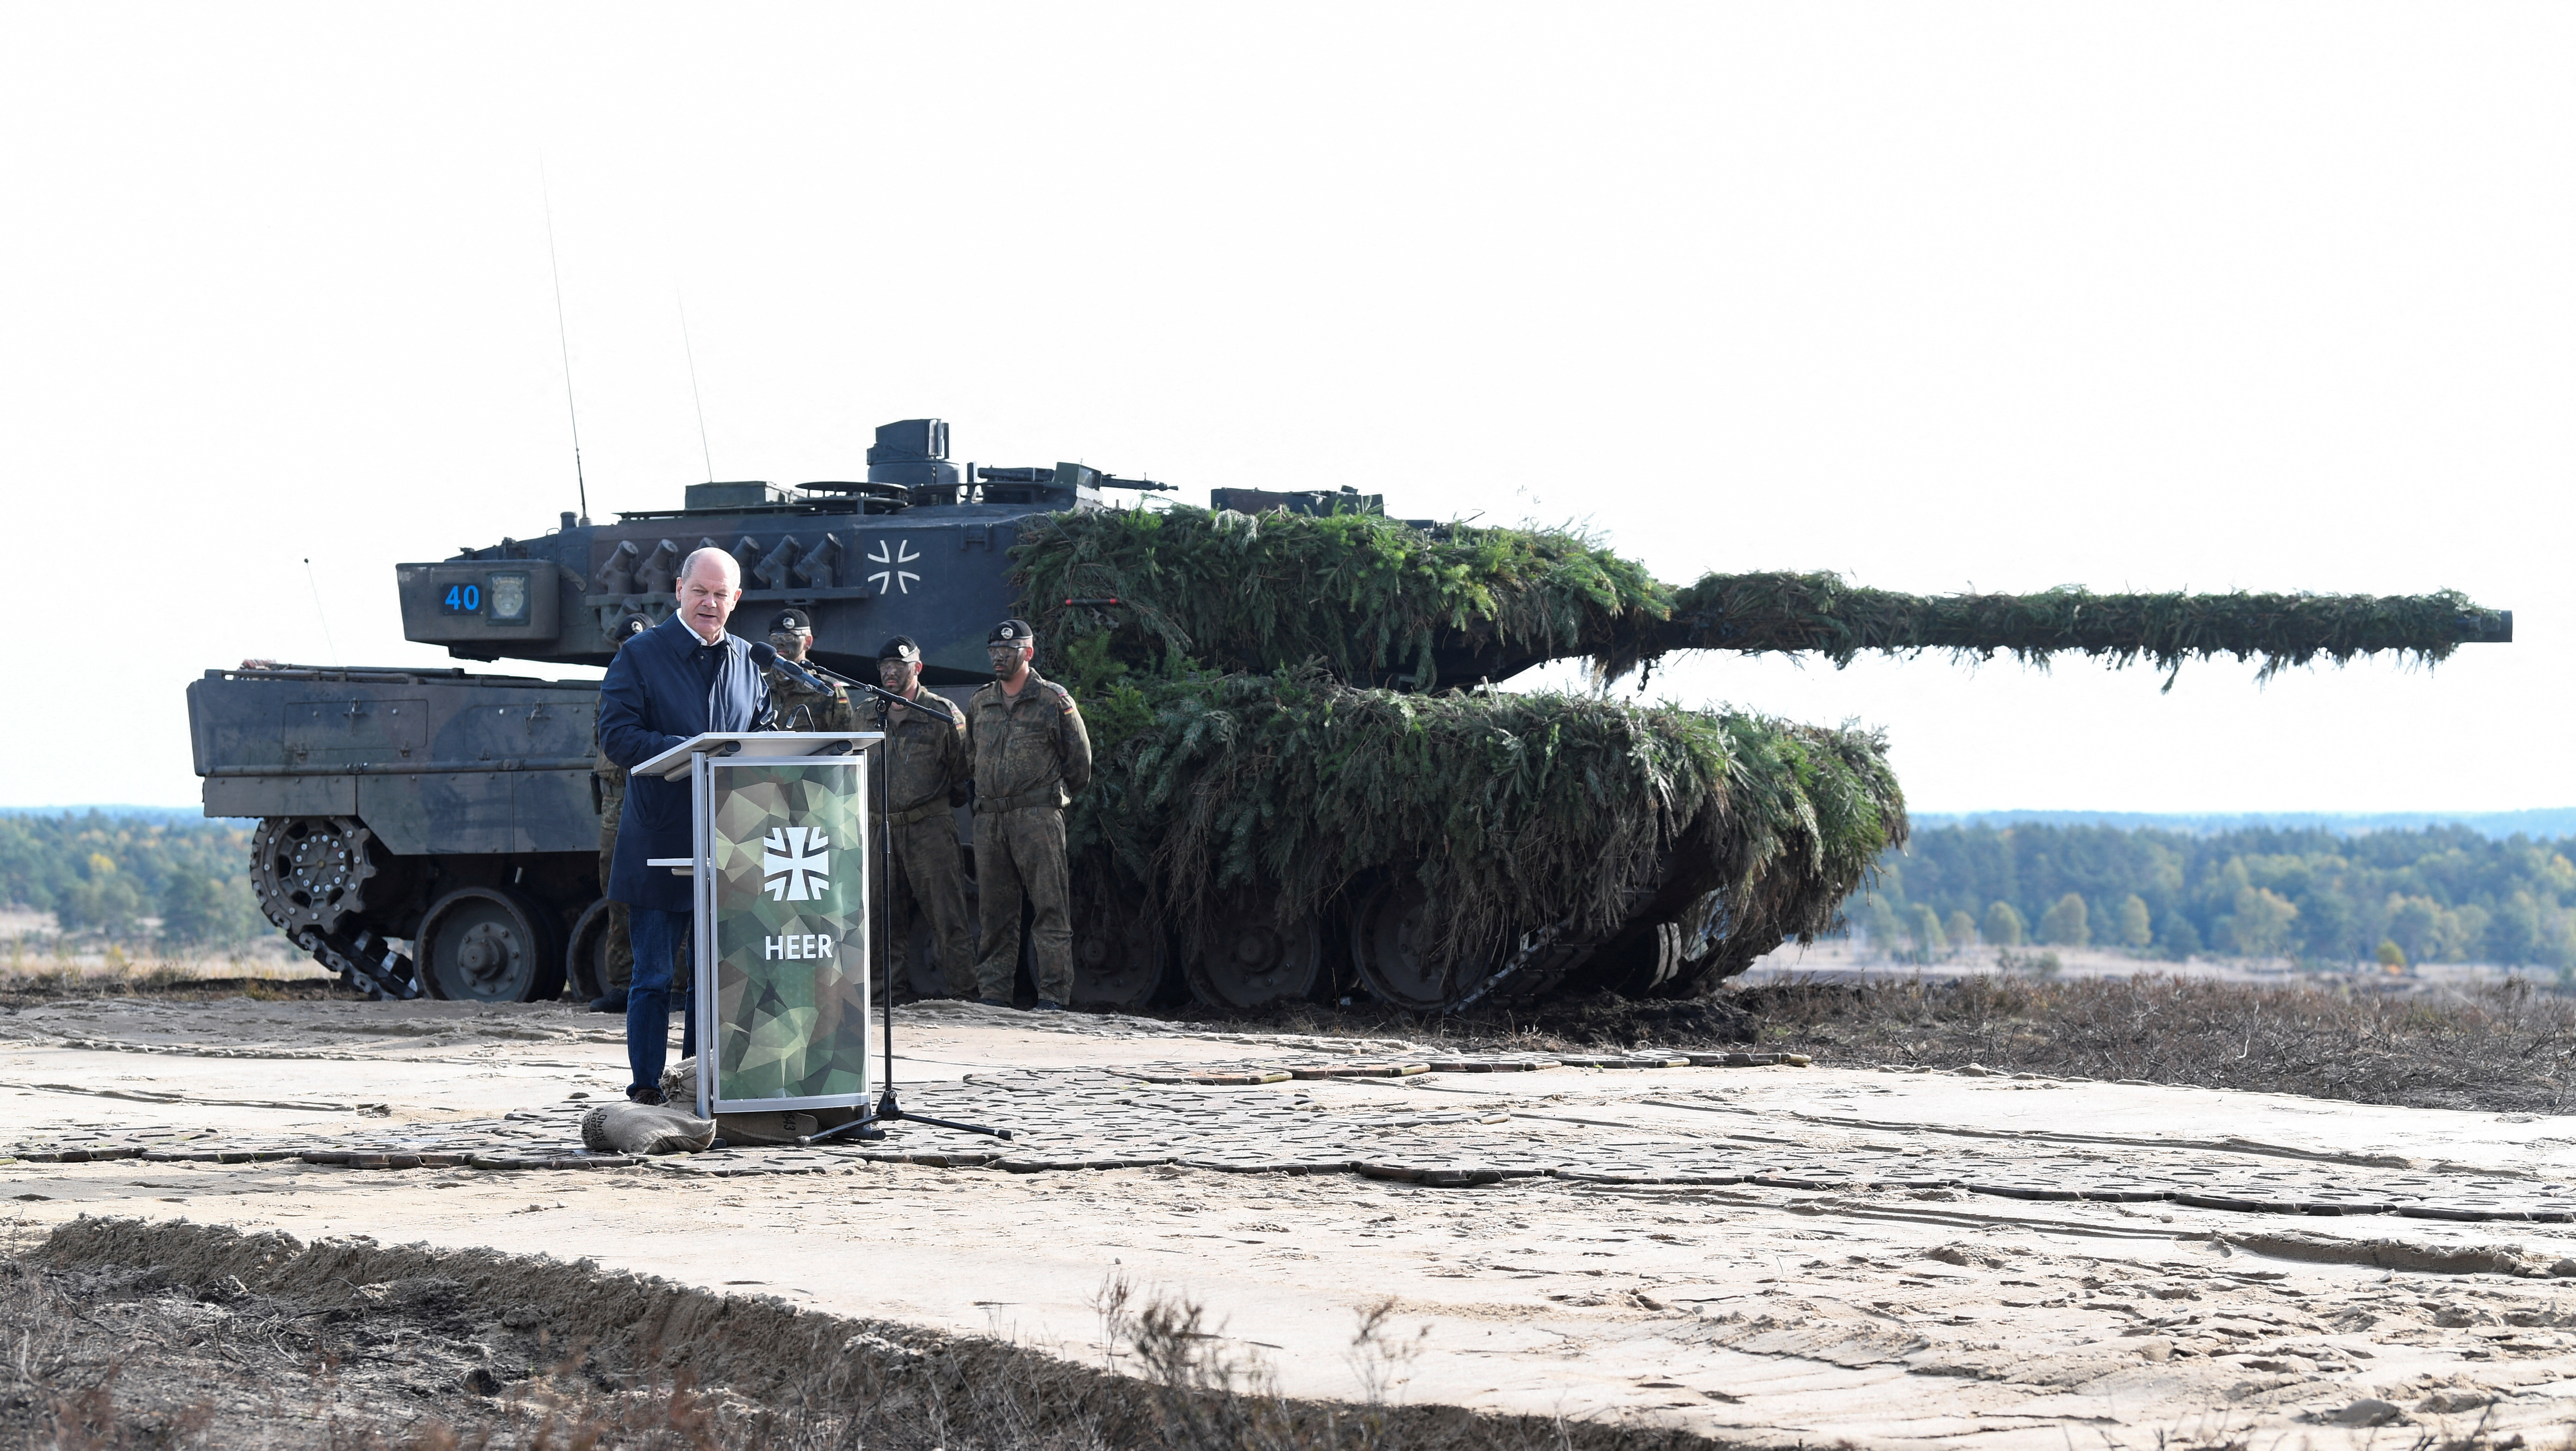 FOTO DE ARCHIVO: El canciller alemán Olaf Scholz pronuncia un discurso frente a un tanque Leopard 2 durante una visita a una base militar del ejército alemán Bundeswehr en Bergen, Alemania, 17 de octubre de 2022. El jefe de estado alemán deberá decidir si autoriza la entrega de tanques a Ucrania (Reuters)